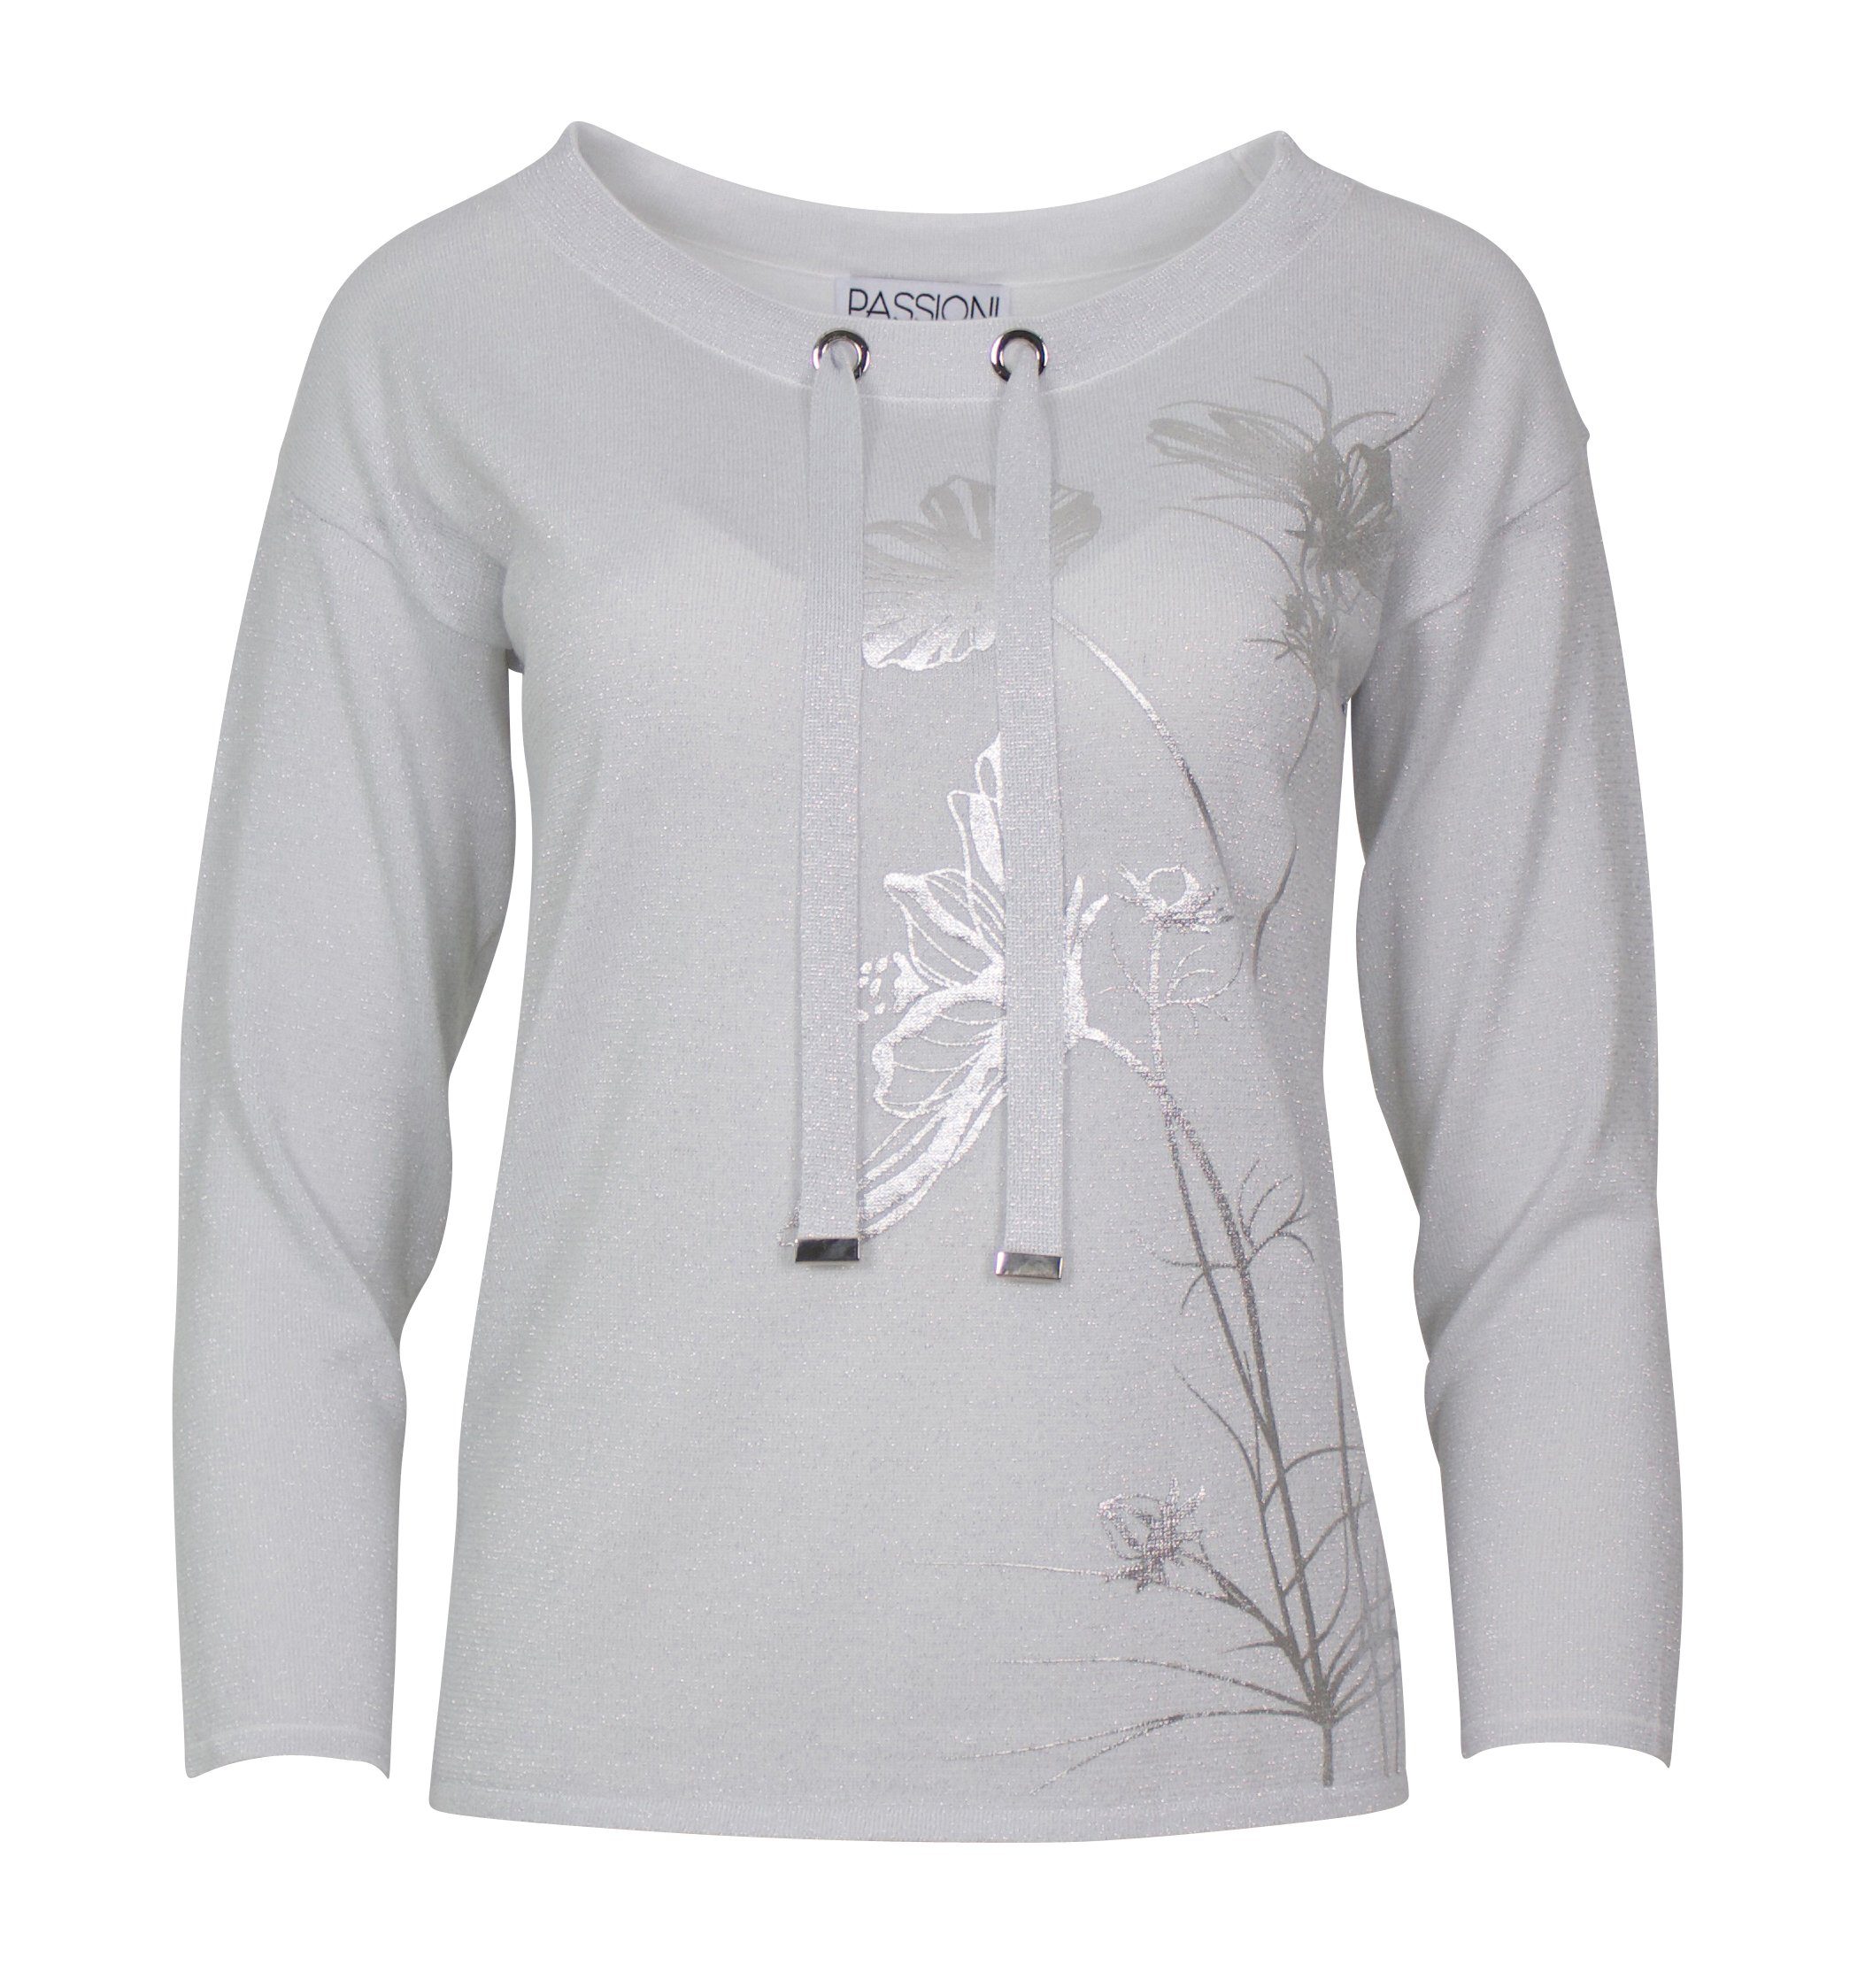 Passioni Langarmshirt Langarm-Shirt mit Silberdruck Silberdruck mit Glanz und